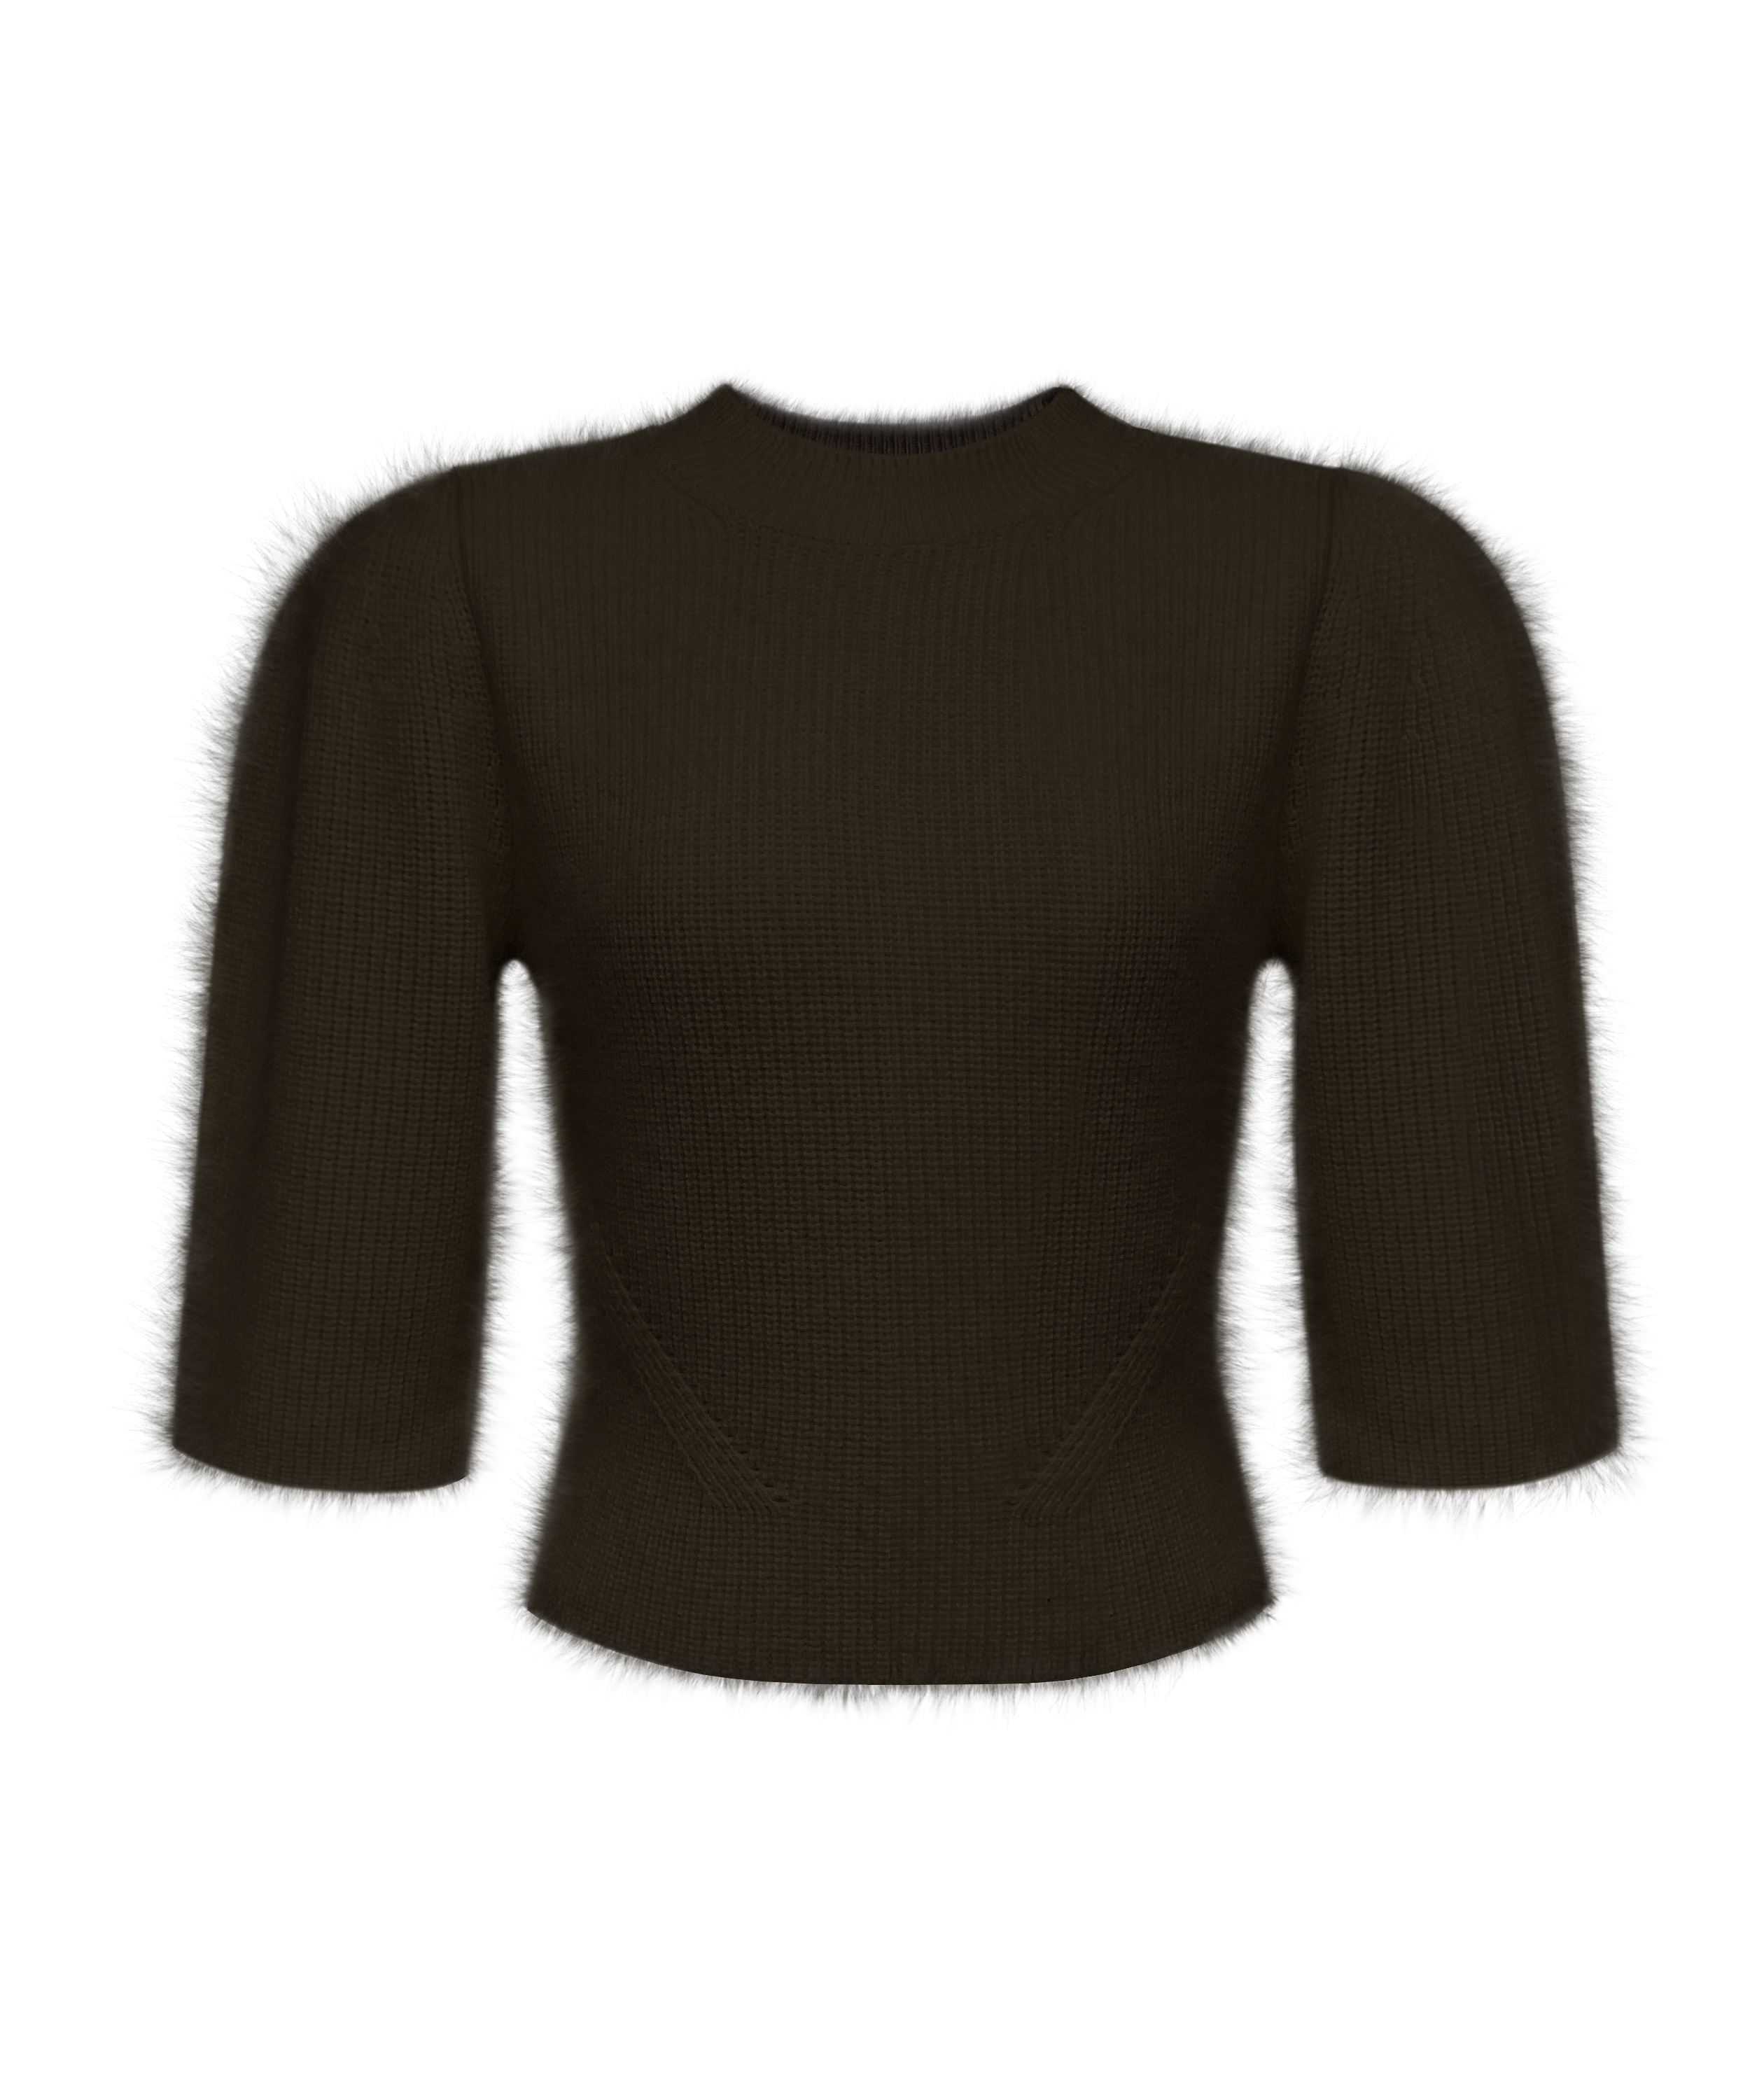 [PREORDER] Raccoon Wool Puffed Sleeve Knitwear - Dark Brown